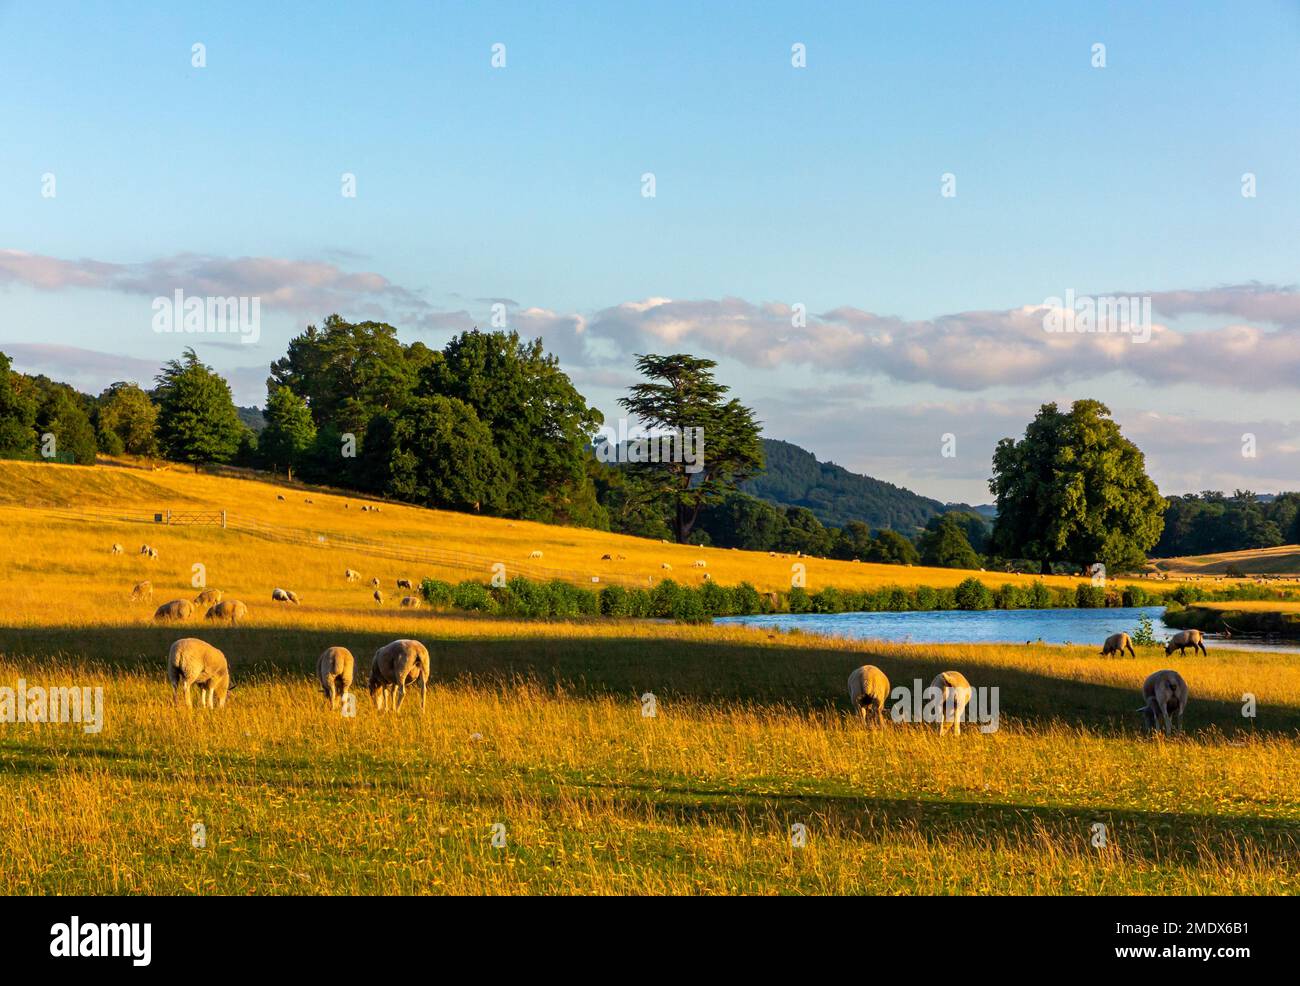 Moutons paître au bord de la rivière Derwent n été près de Chatsworth dans le parc national de Peak District Derbyshire Dales Angleterre Royaume-Uni Banque D'Images